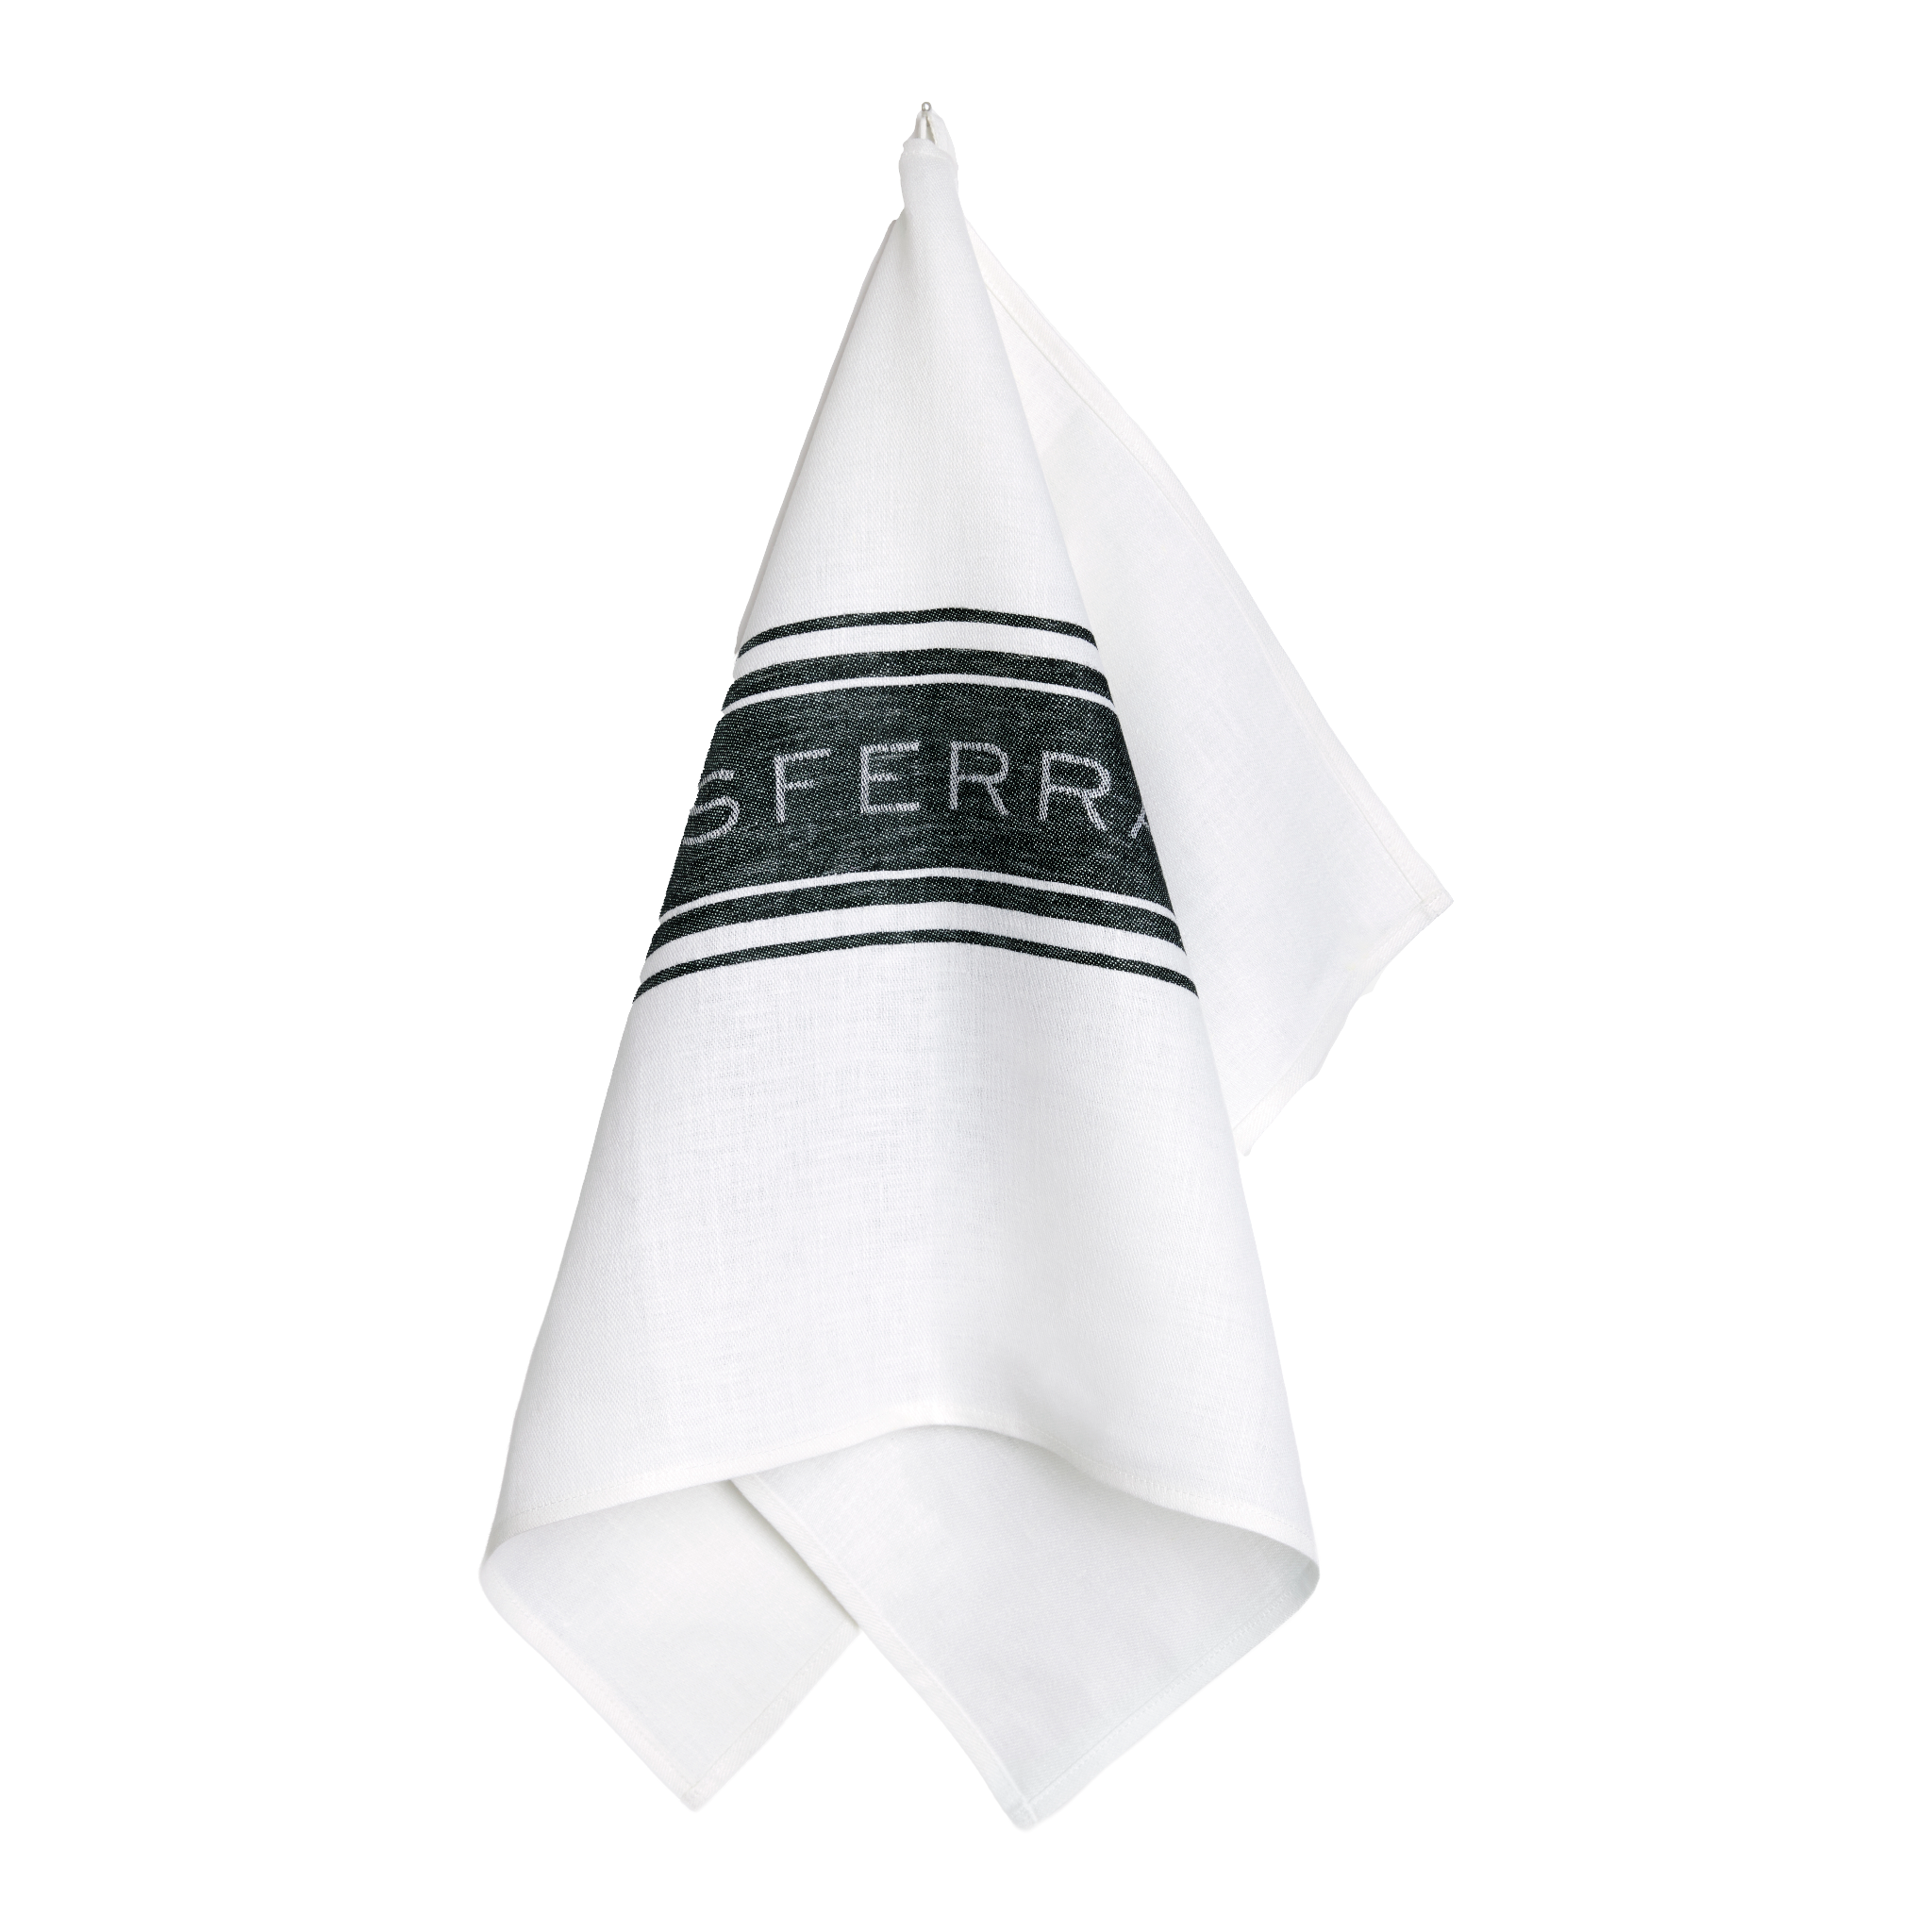 https://flandb.com/cdn/shop/products/Sferra-Parma-Kitchen-Towels-Black.png?v=1675907532